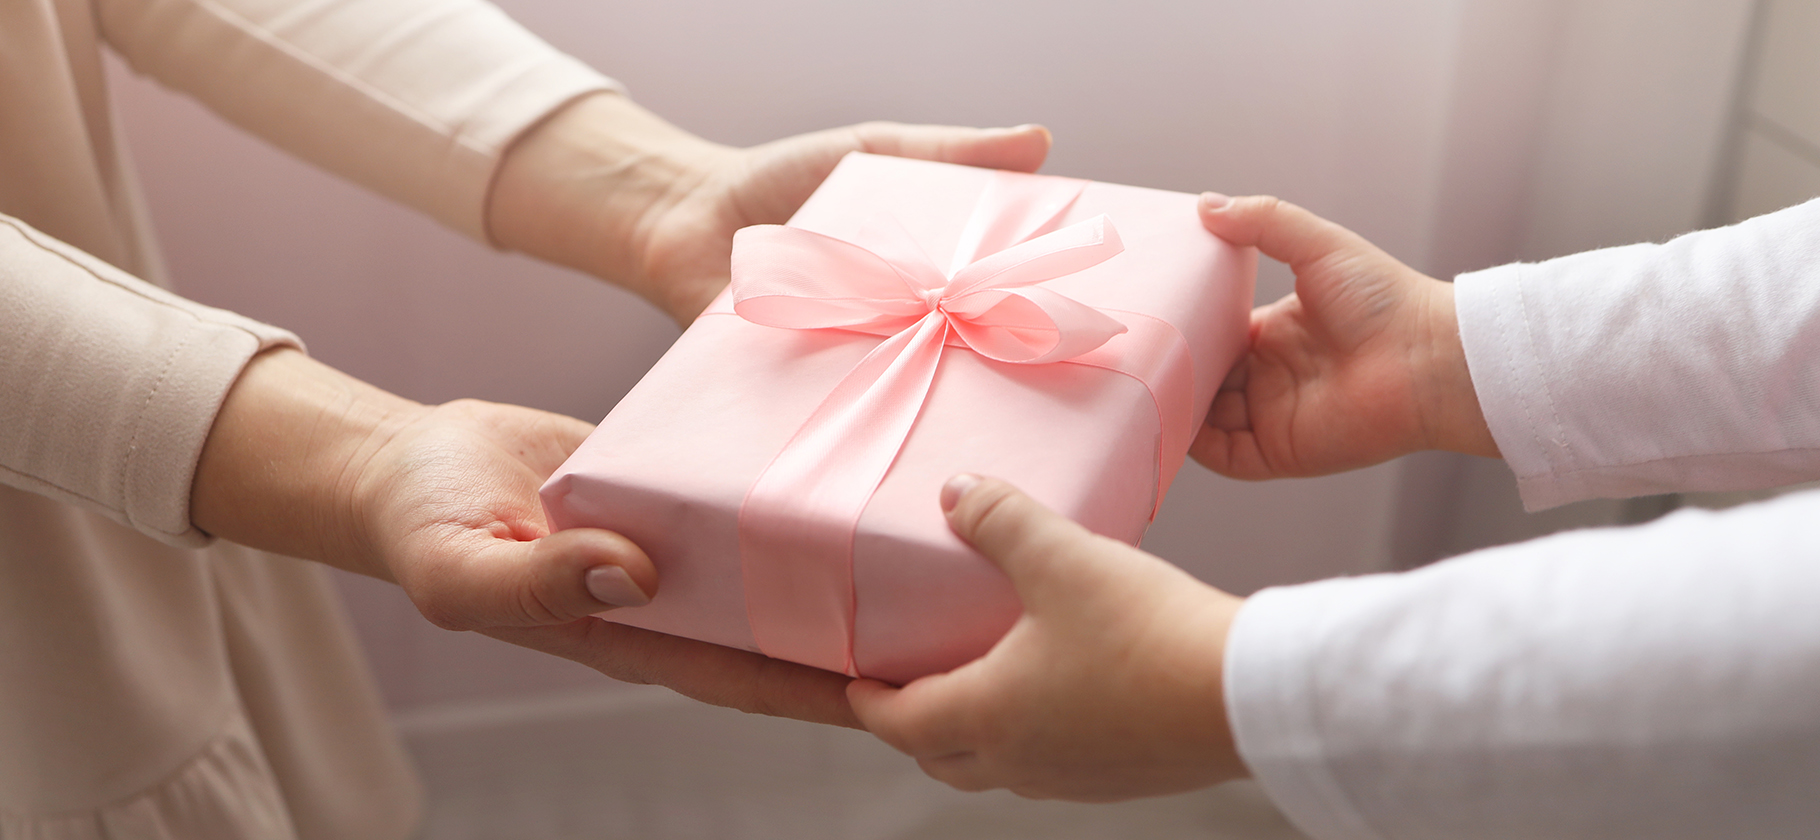 Как вернуть подарок: можно ли вернуть подарок в магазин | Роскачество